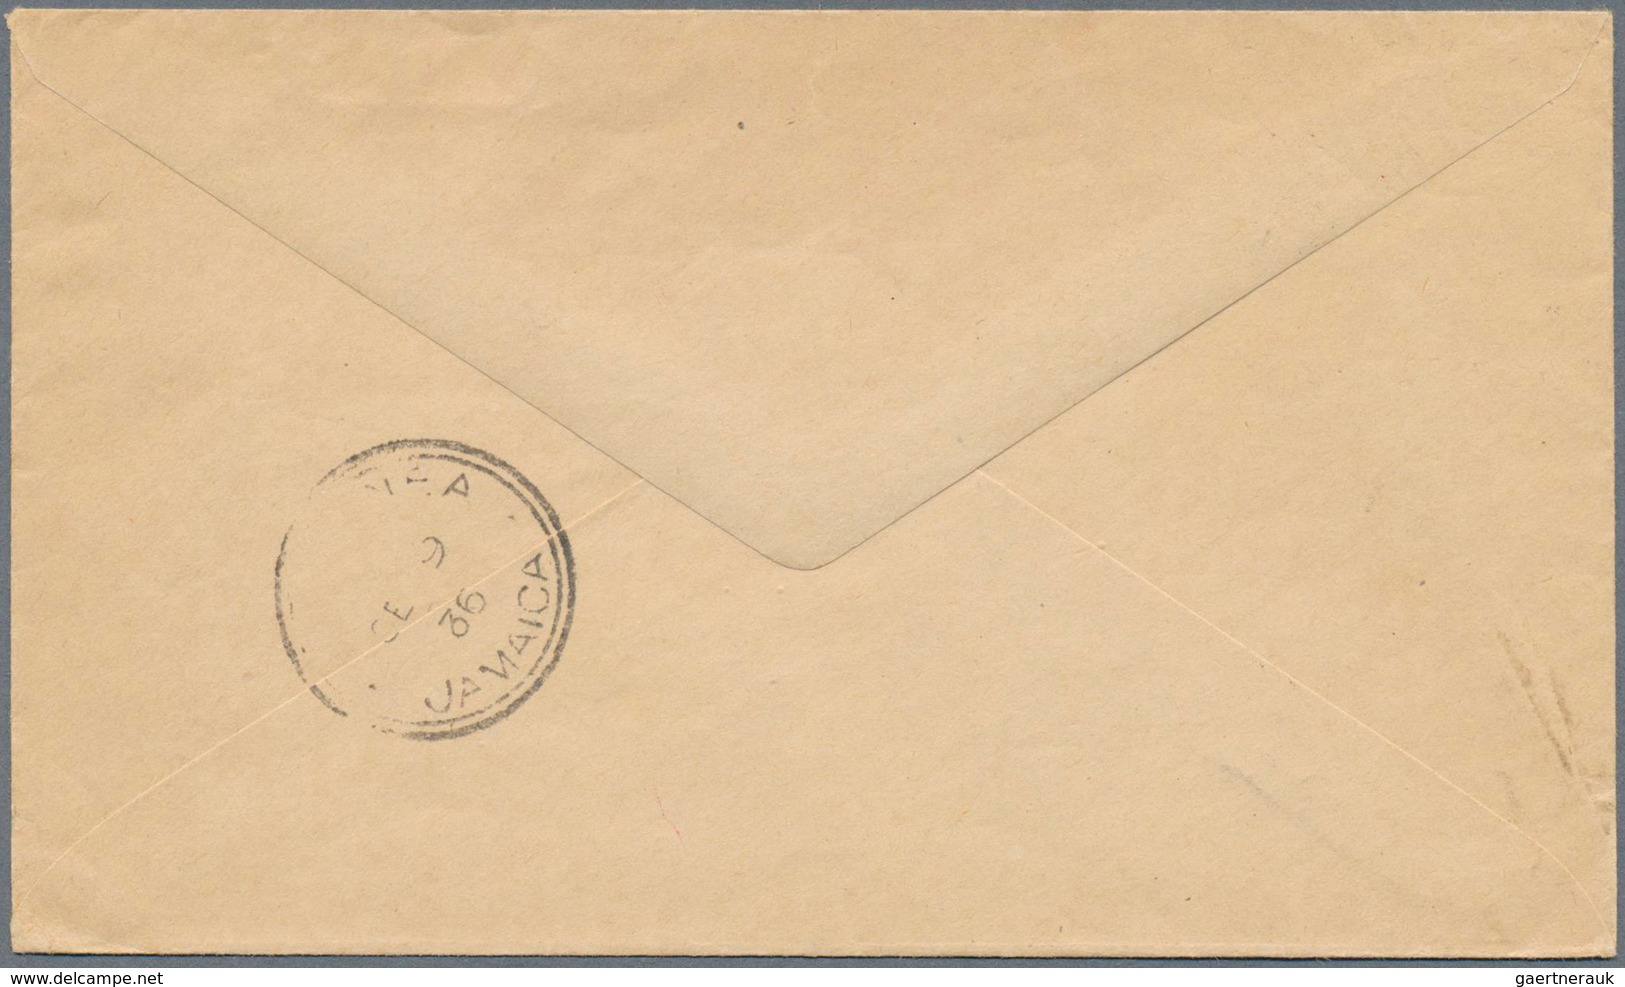 Malaiische Staaten - Kedah: 1936 Printed 'State Engineer's Office' Envelope Used As Printed Matter F - Kedah